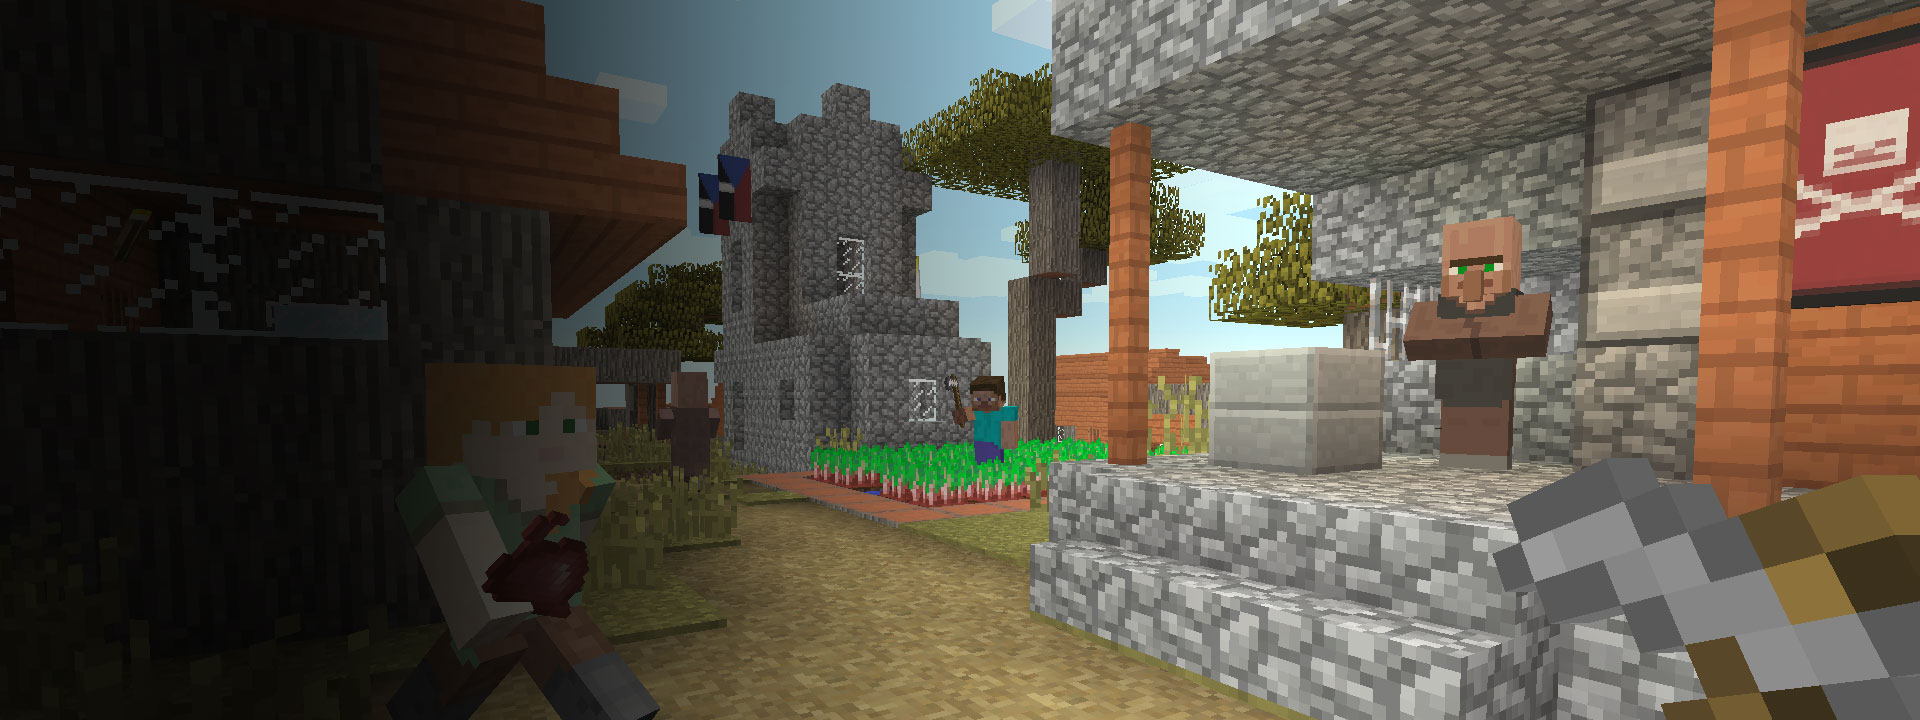 Plusieurs maisons et des personnages Minecraft marchant en avant plan.